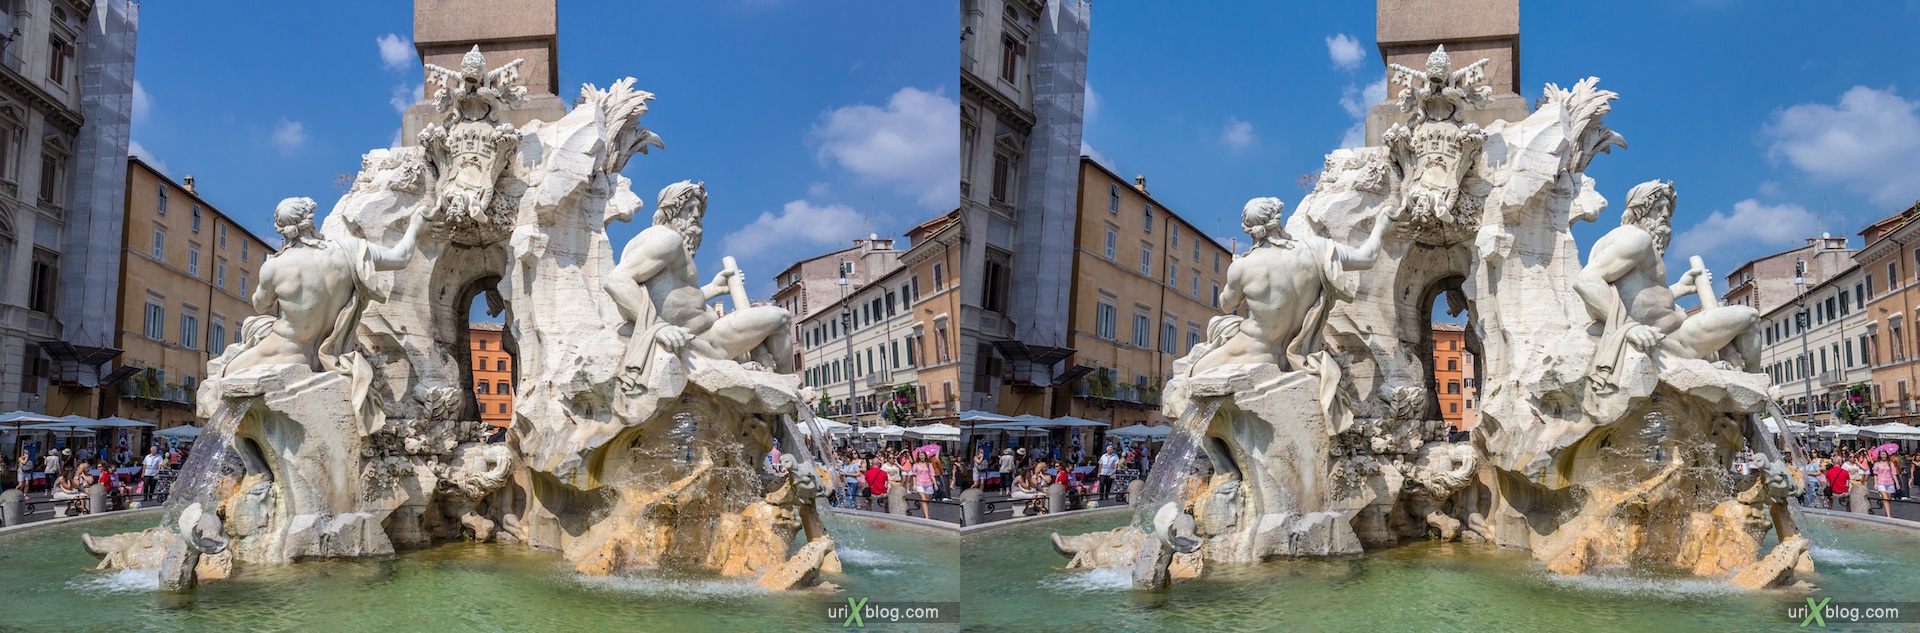 2012, фонтан Четырёх рек, площадь Навона, Рим, Италия, 3D, перекрёстные стереопары, стерео, стереопара, стереопары